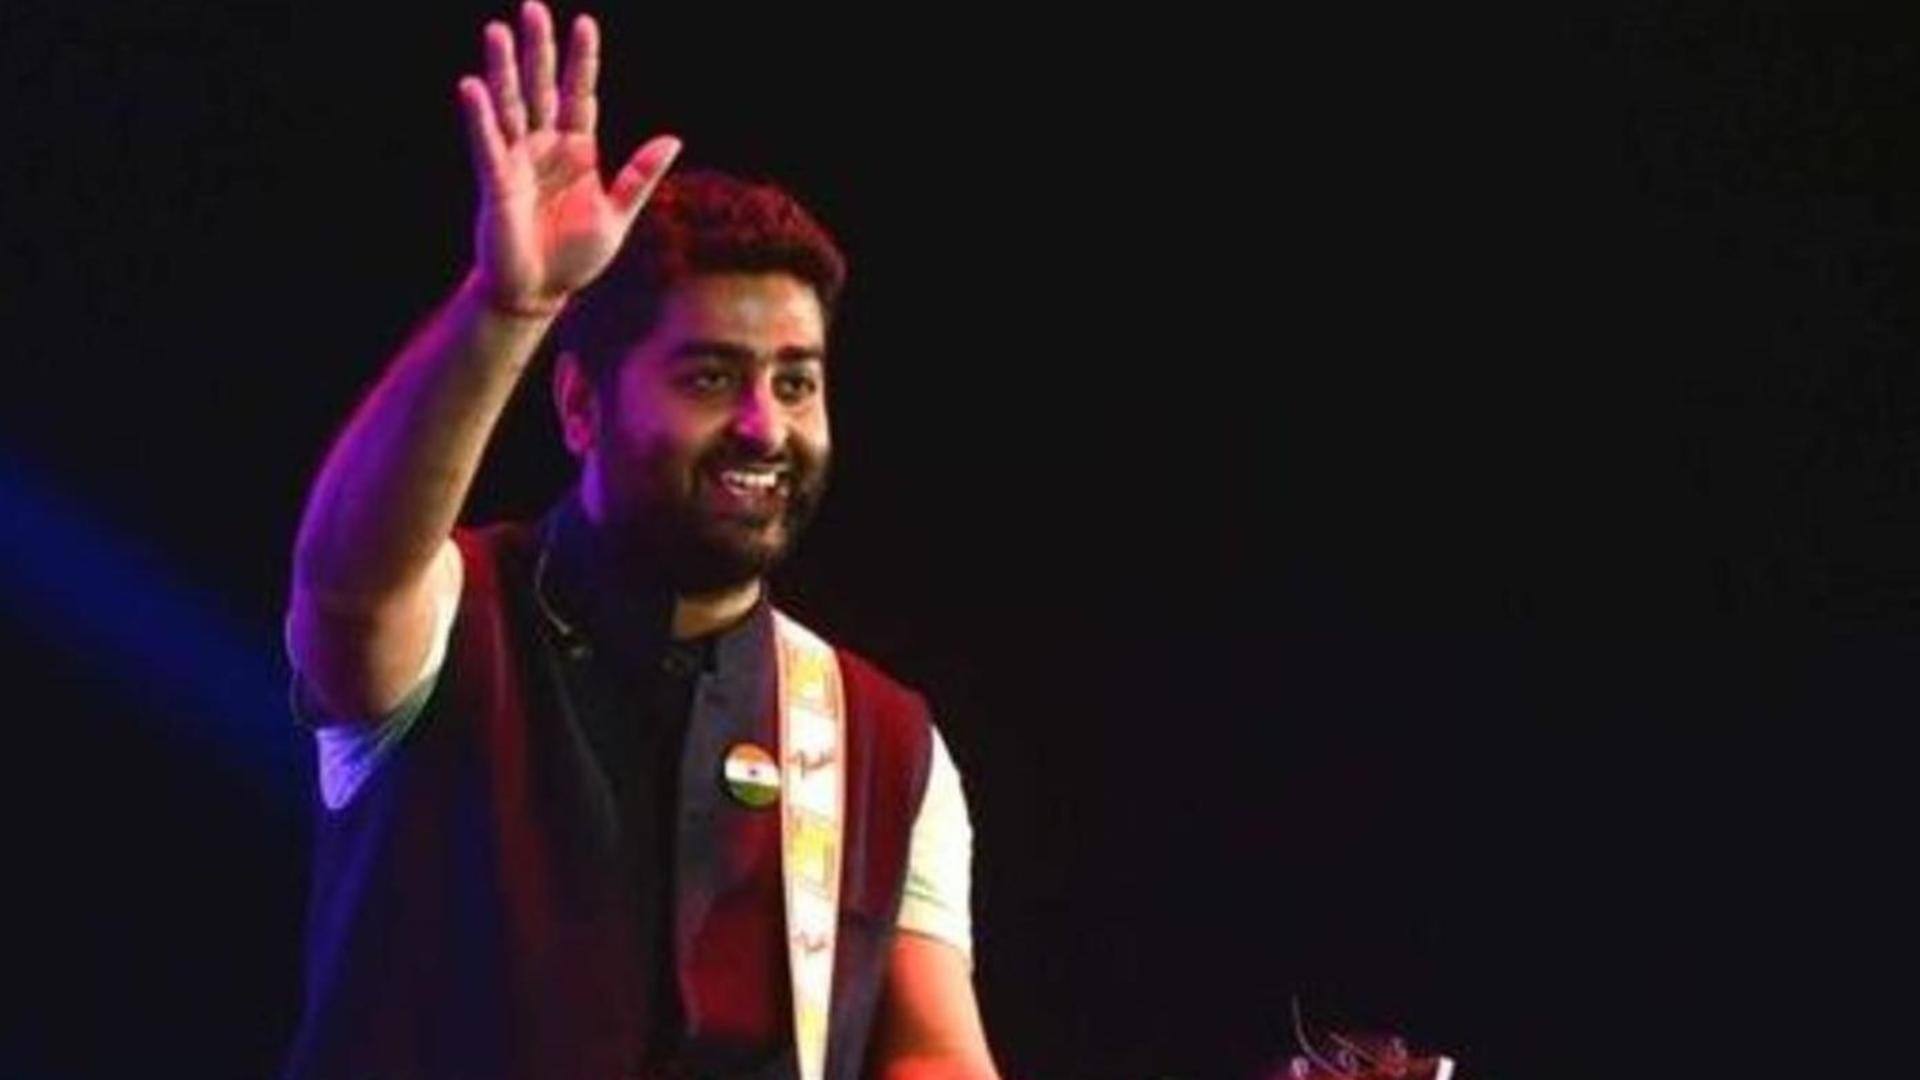 Handshake went wrong: Arijit Singh left injured after Aurangabad concert